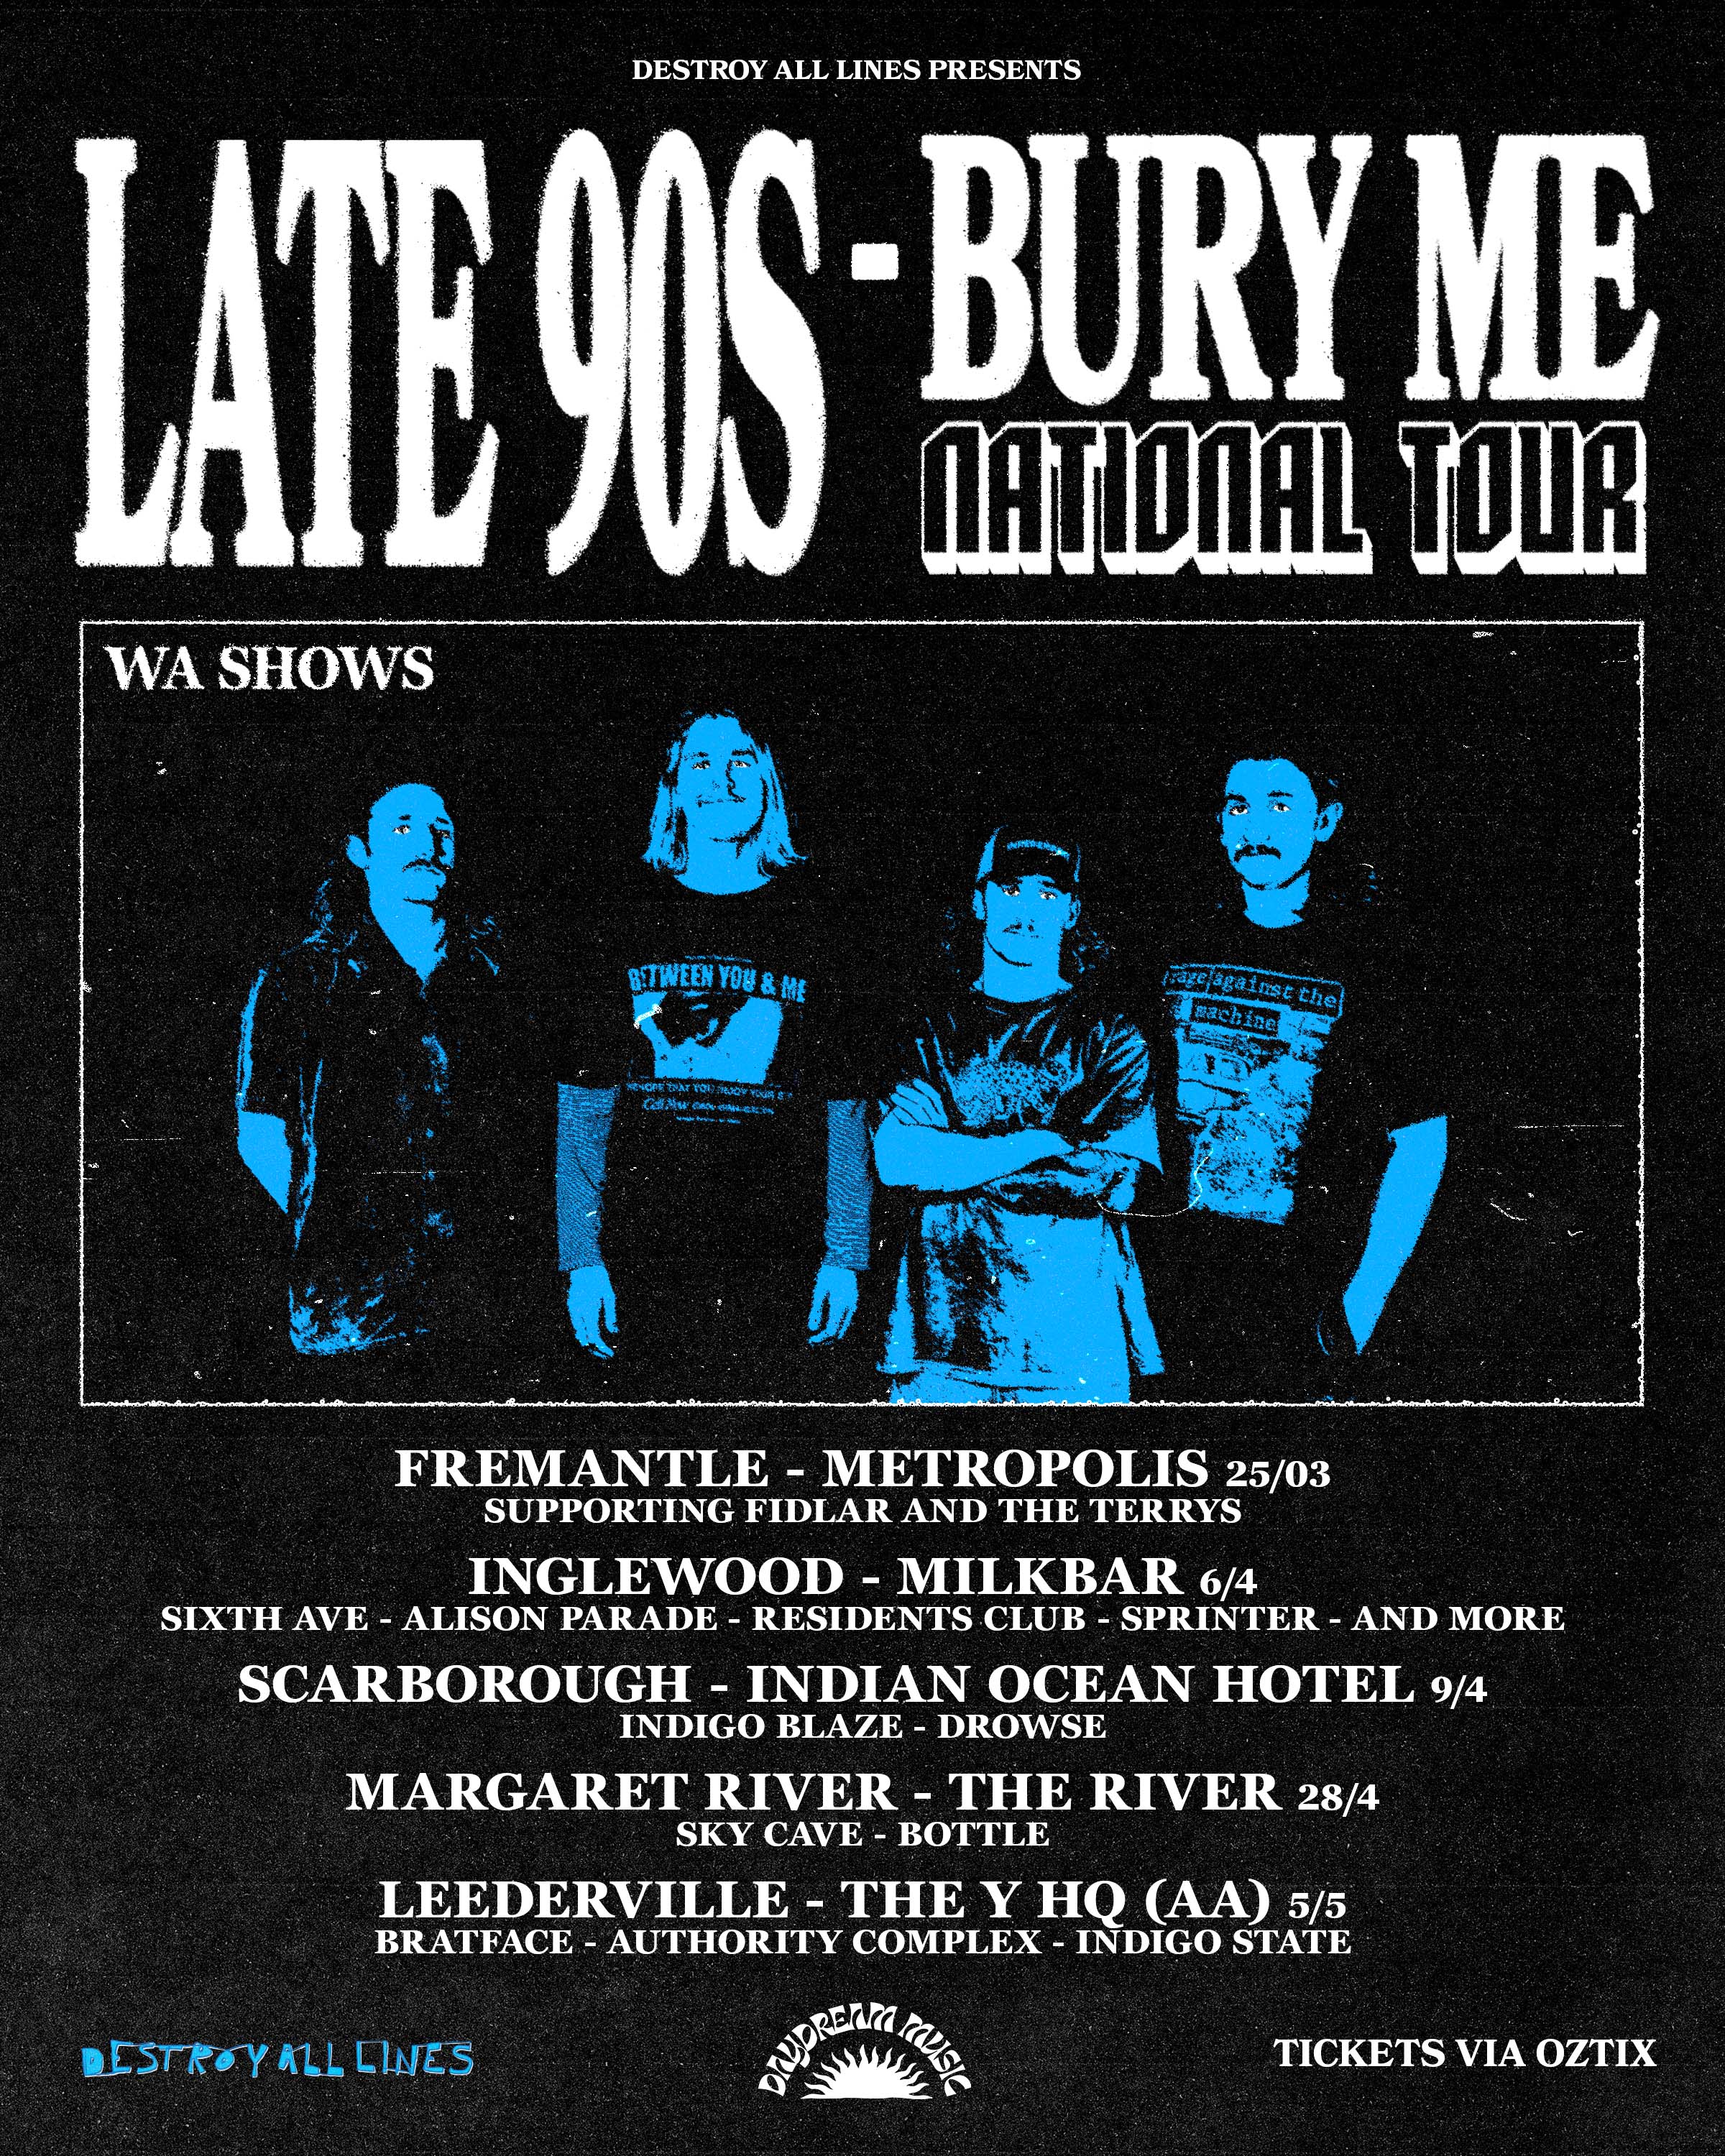 Late 90's Bury Me WA Poster